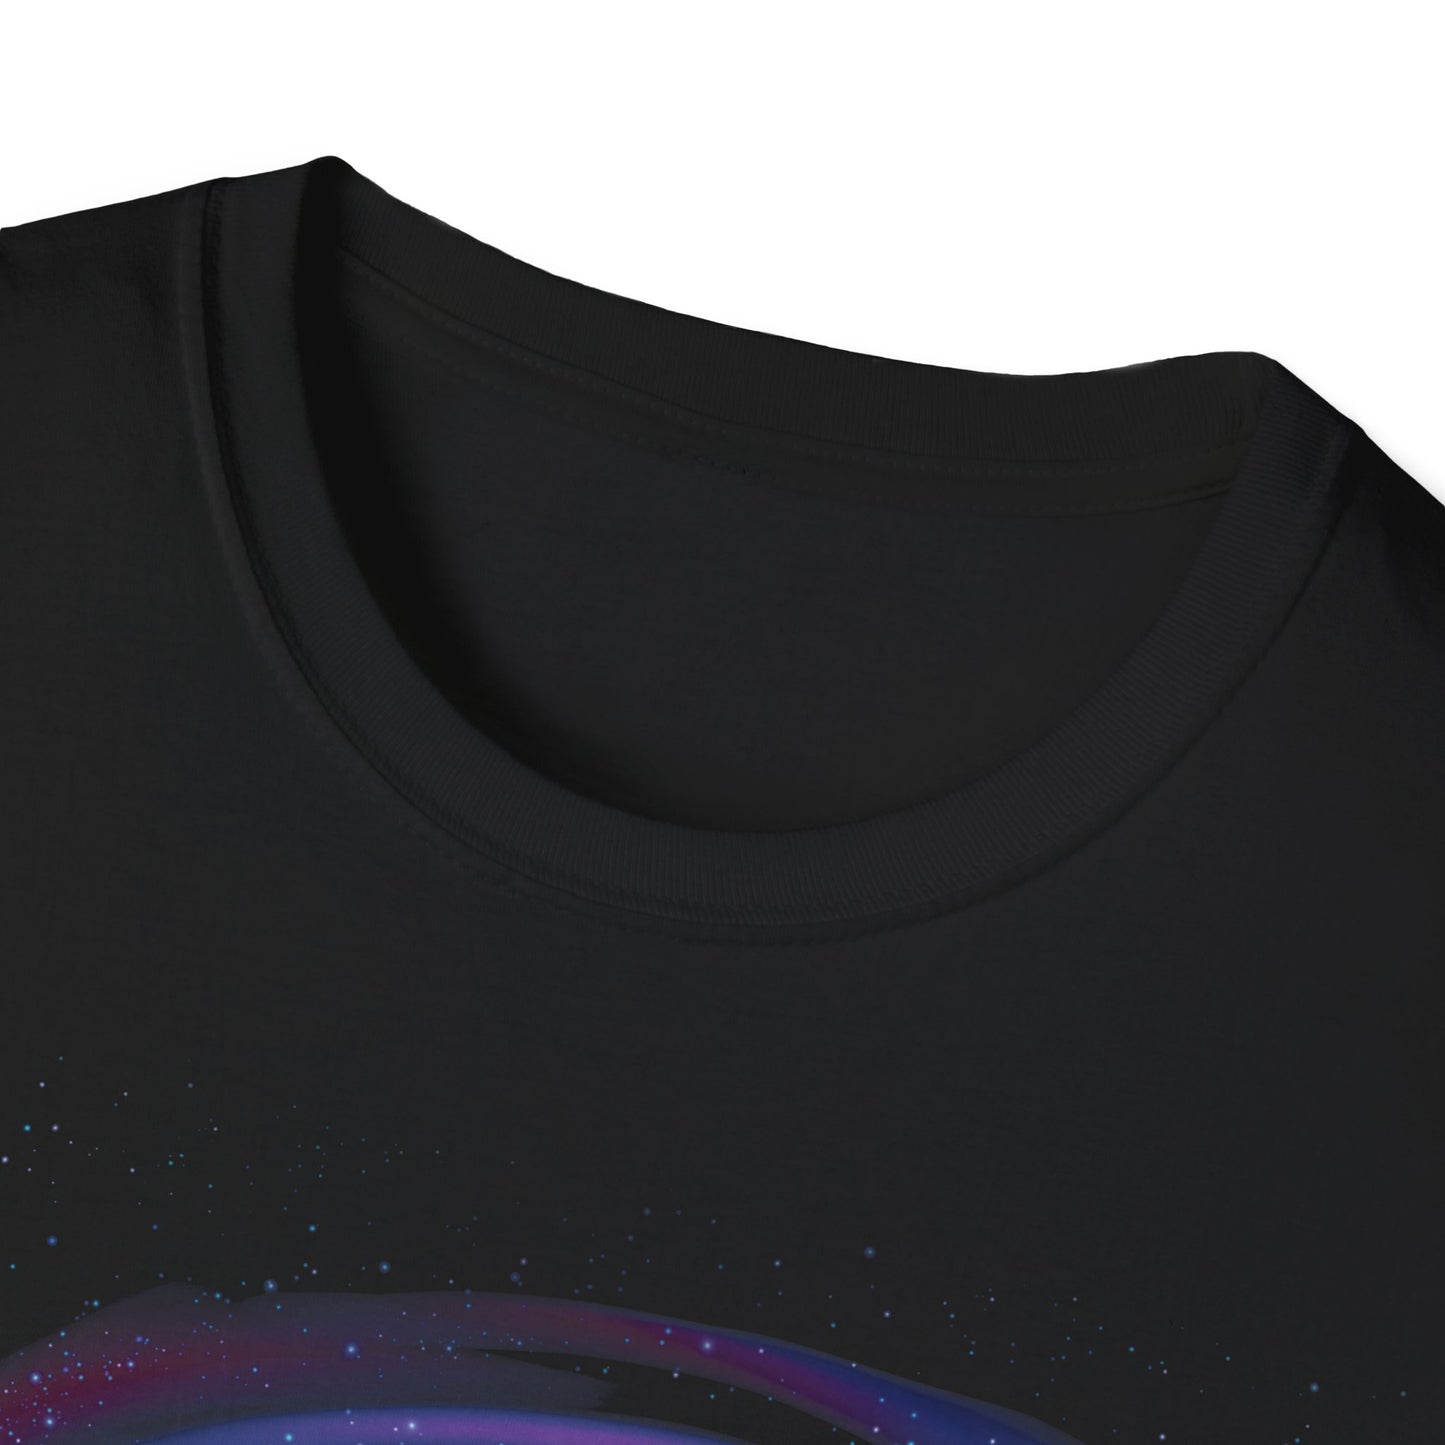 Unisex-Kurzarm-T-Shirt mit einem Satz auf Katalanisch über das Sonnensystem.